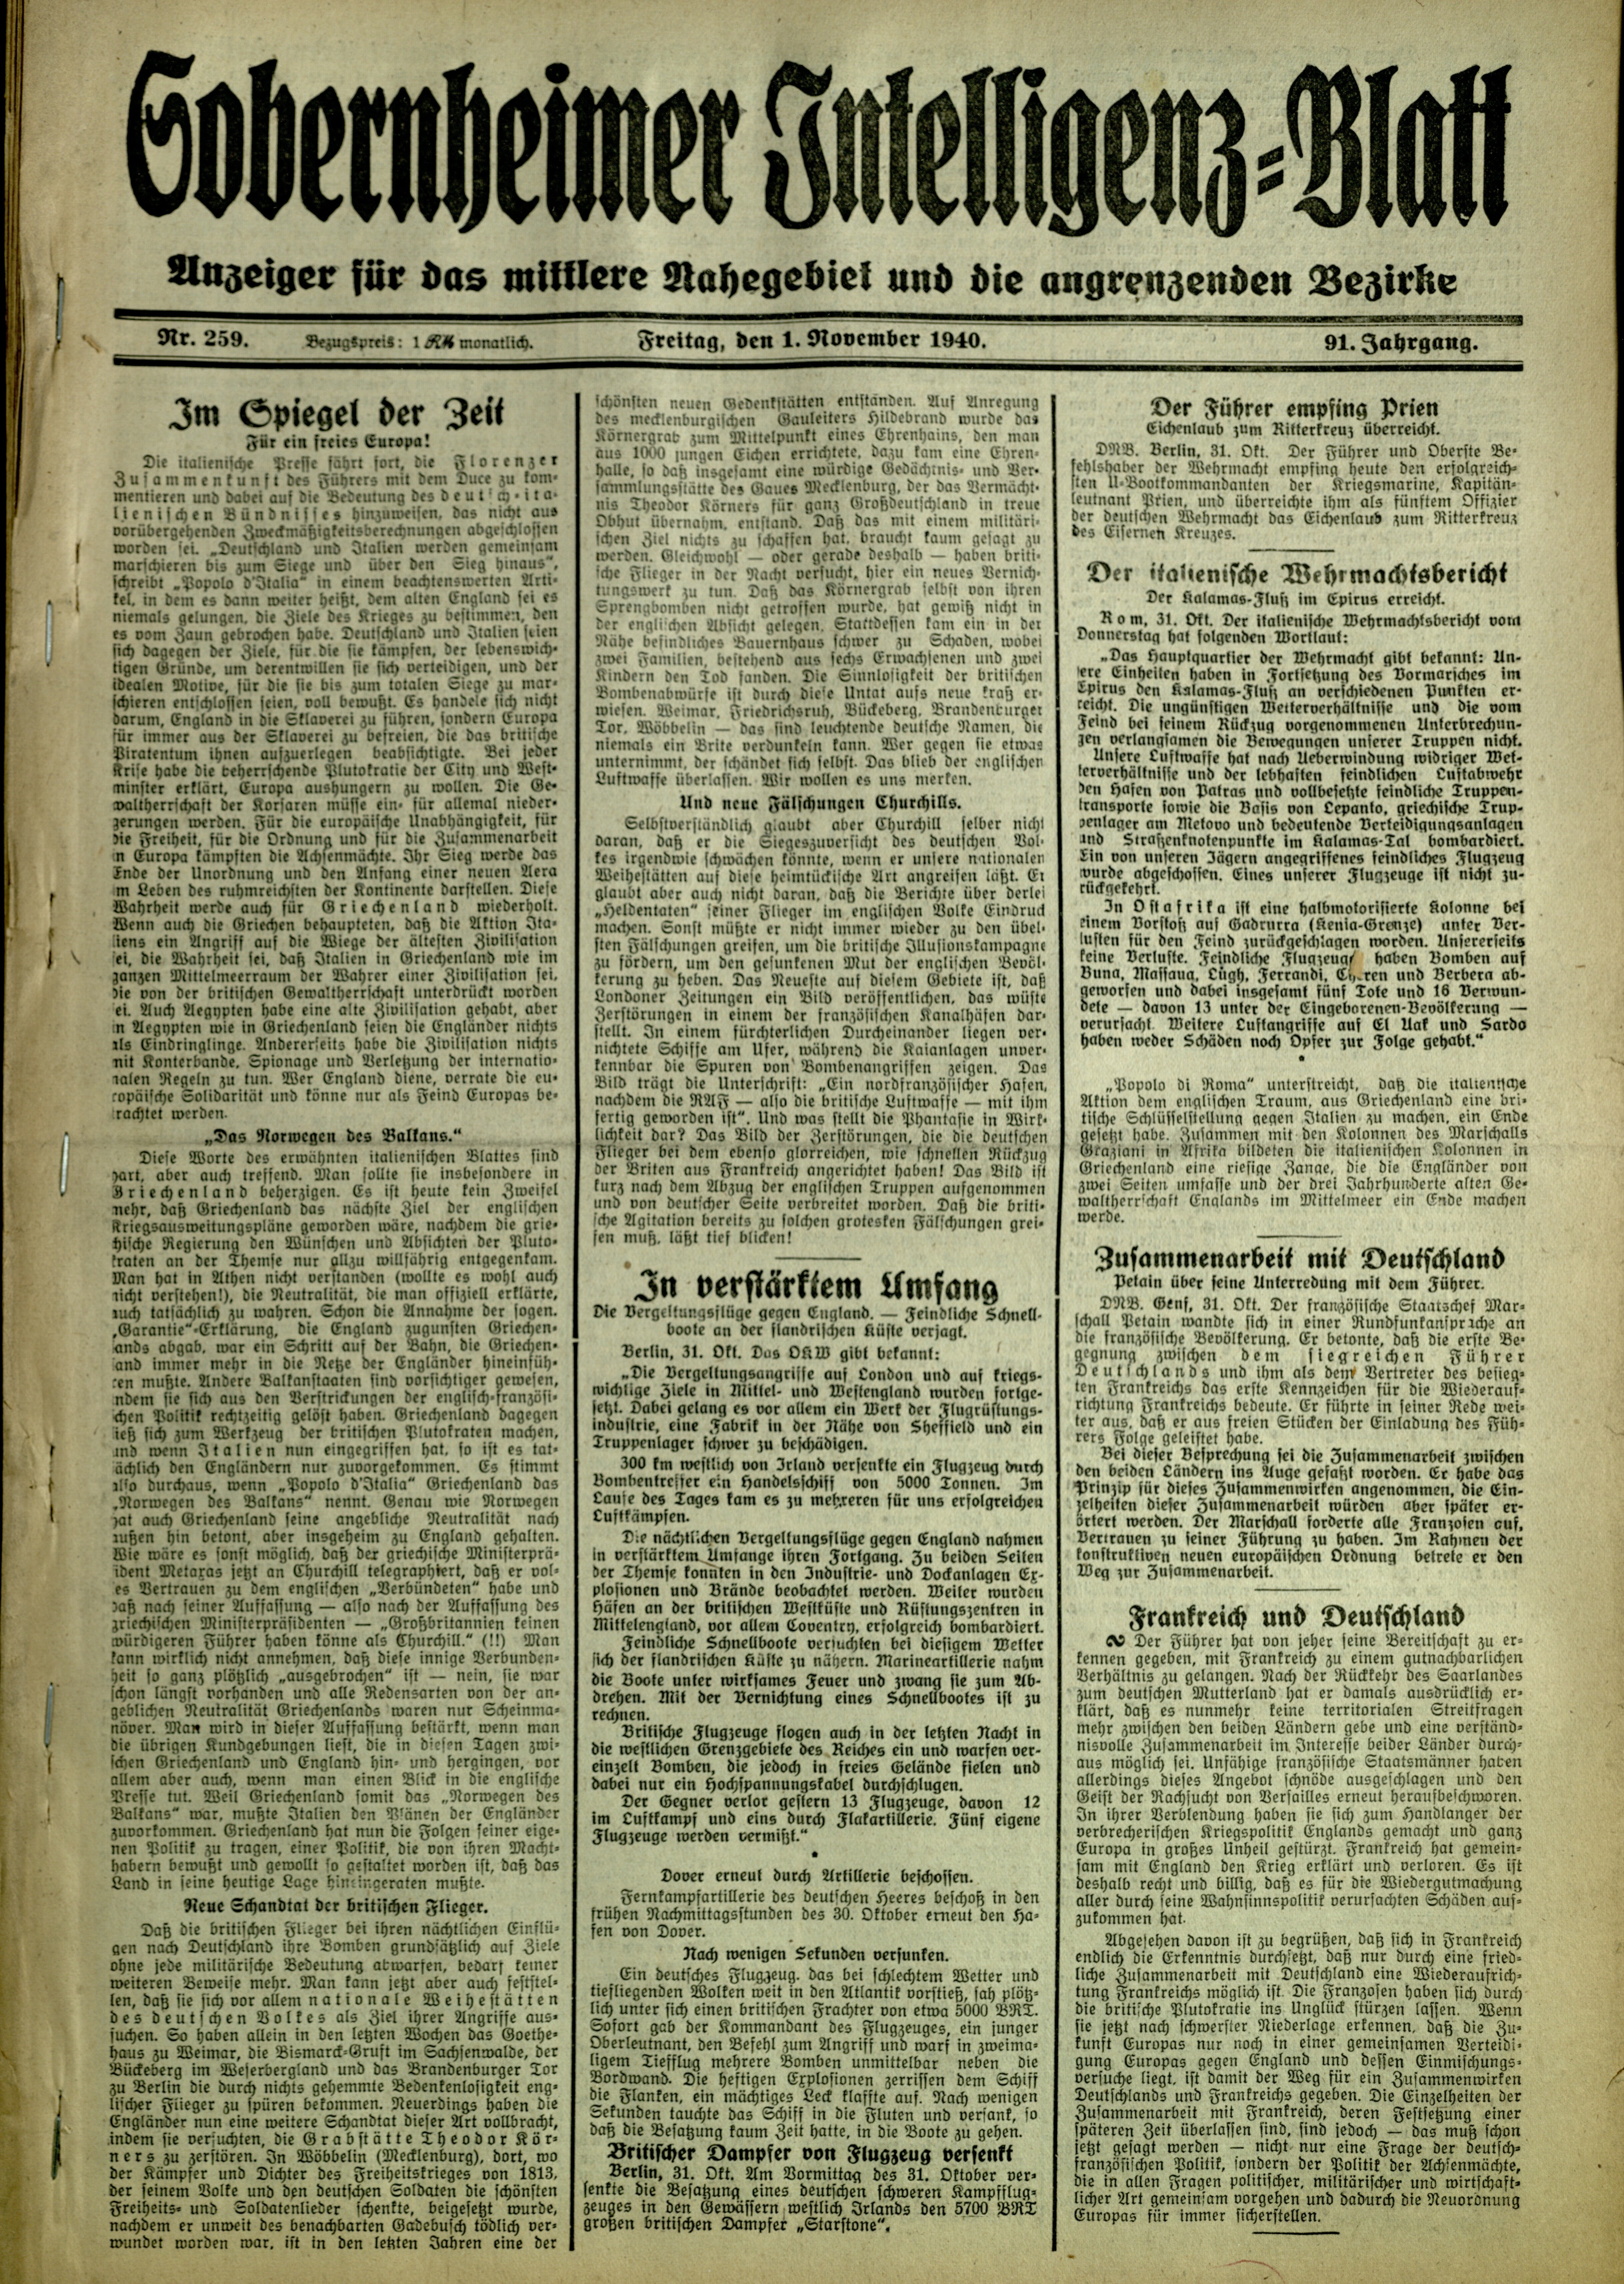 Zeitung: Sobernheimer Intelligenzblatt; November 1940, Jg. 91 Nr. 259 (Heimatmuseum Bad Sobernheim CC BY-NC-SA)